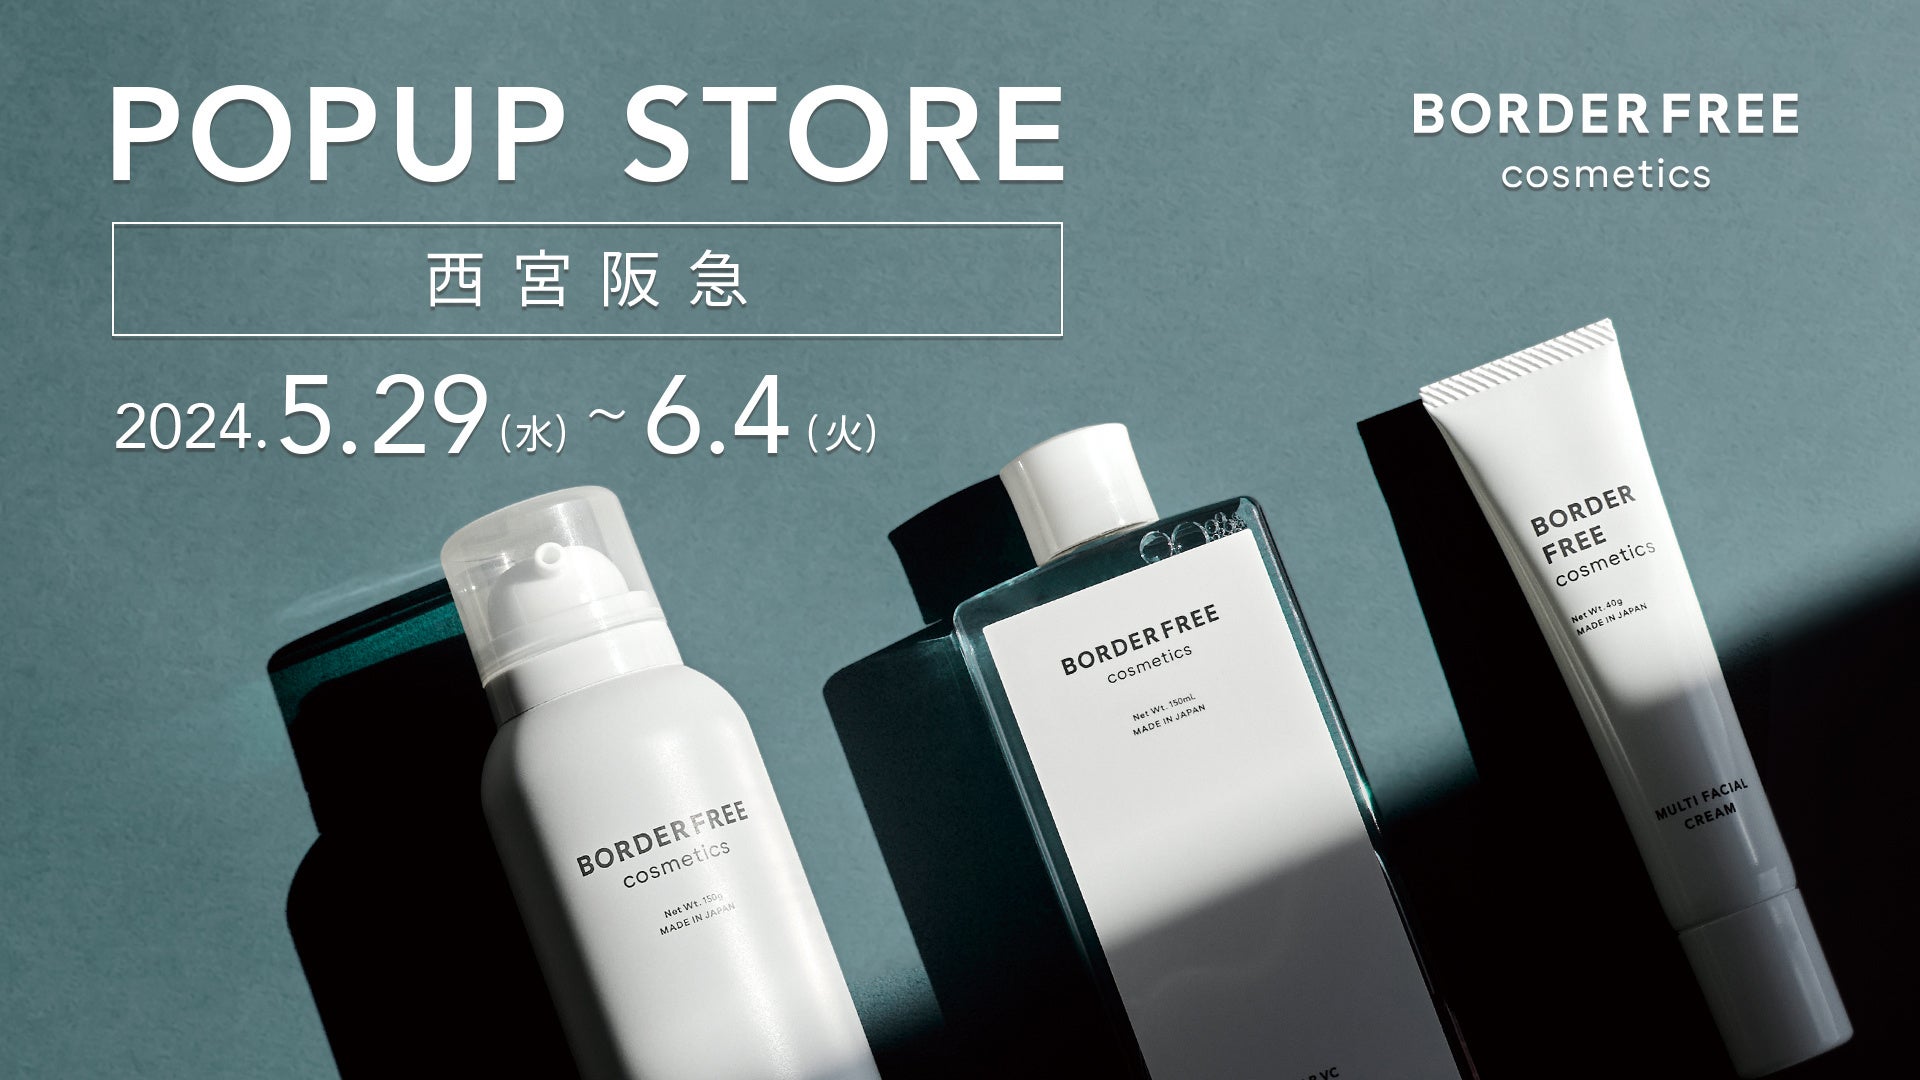 【関西初出店】日本発・エイジングケアブランド「BORDER FREE cosmetics」が西宮阪急に期間限定ポップアップストアをオープン